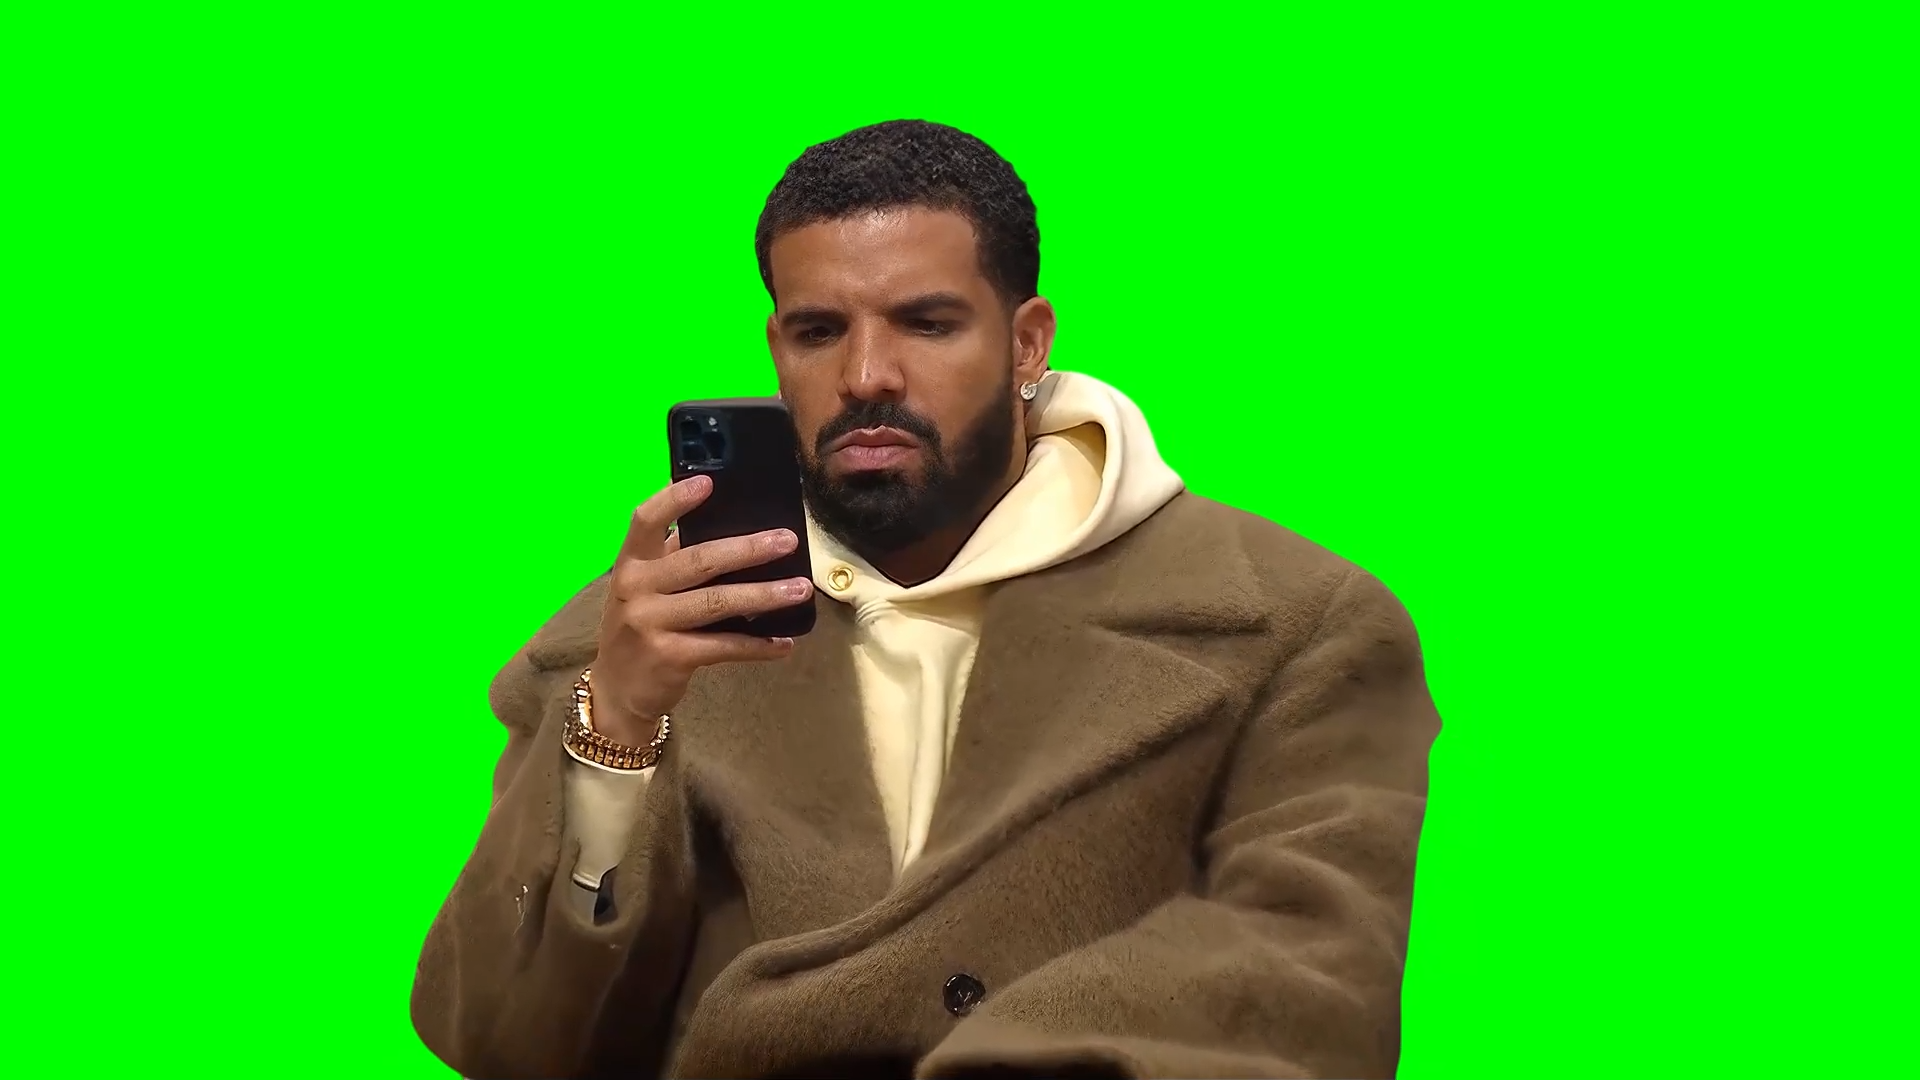 Drake Looking at His Phone meme (Green Screen)